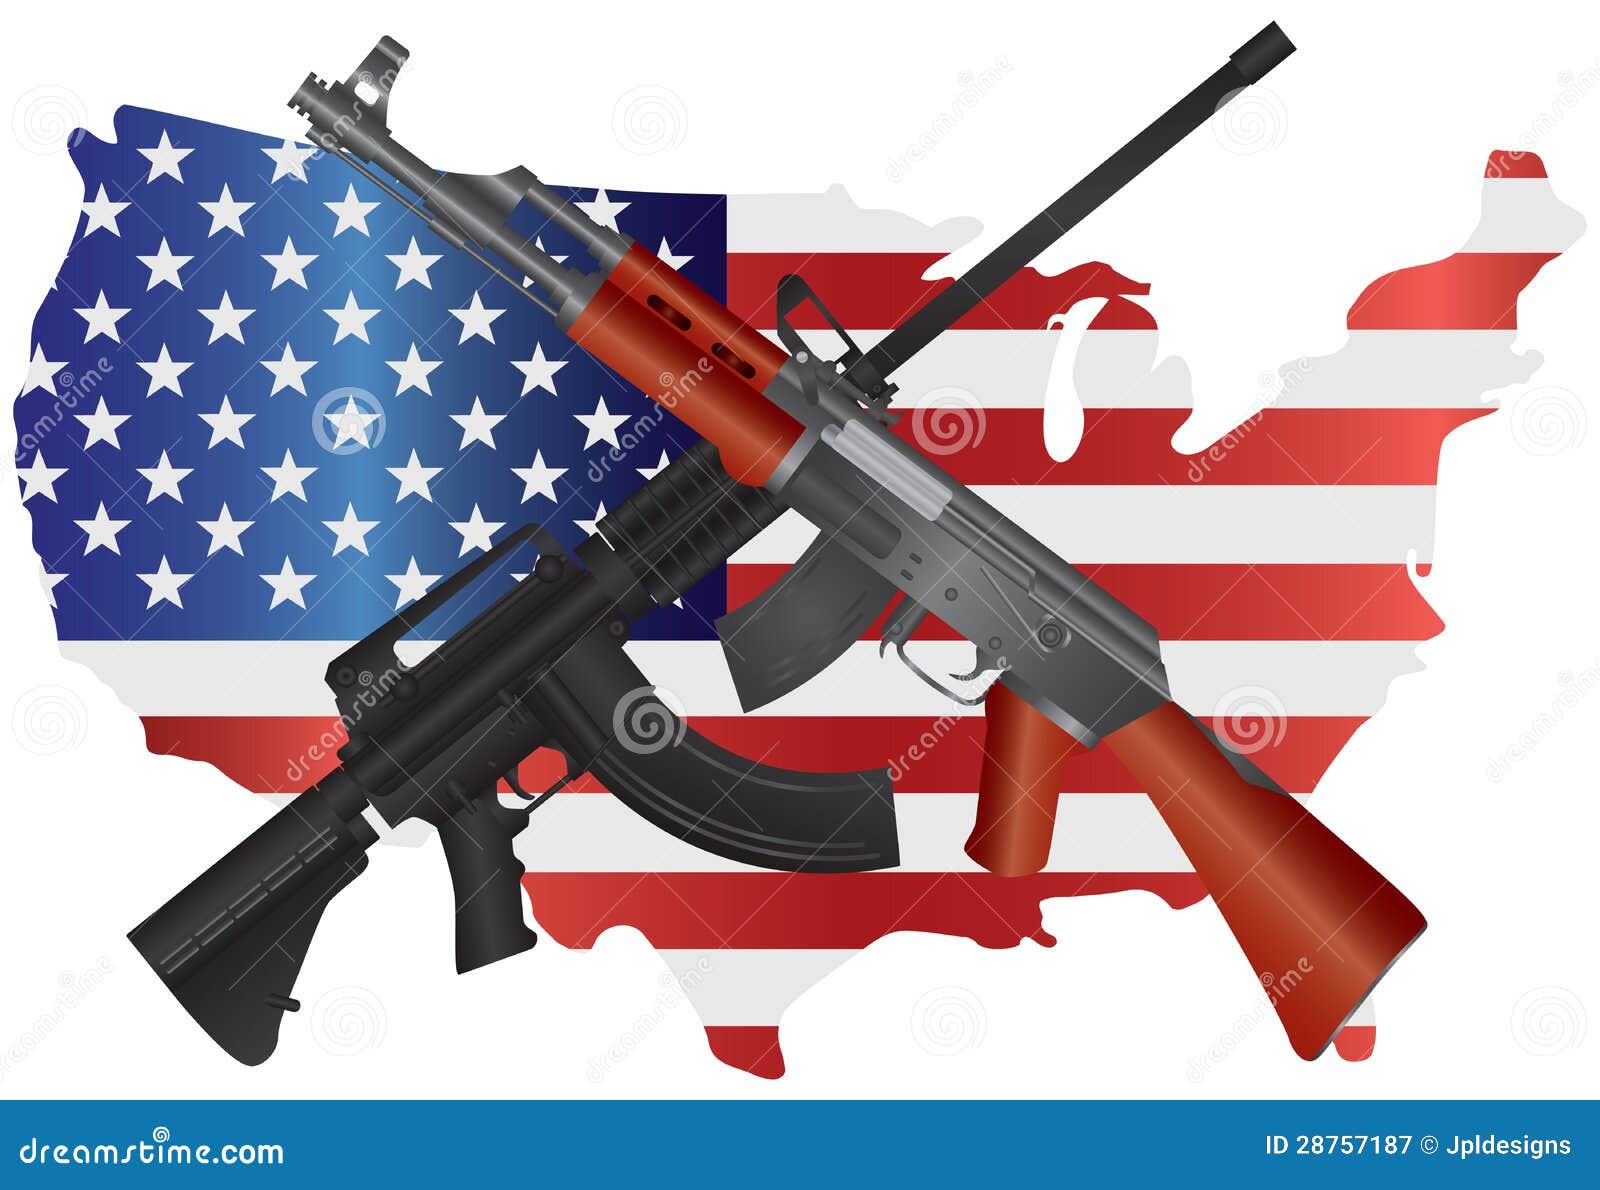 Karabiny Szturmowy z usa mapy flaga ilustracją. Karabiny Szturmowy AR 15 i AK 47 bronie automatyczne na usa mapy flaga Drugi poprawek konstytuci ilustraci Semi